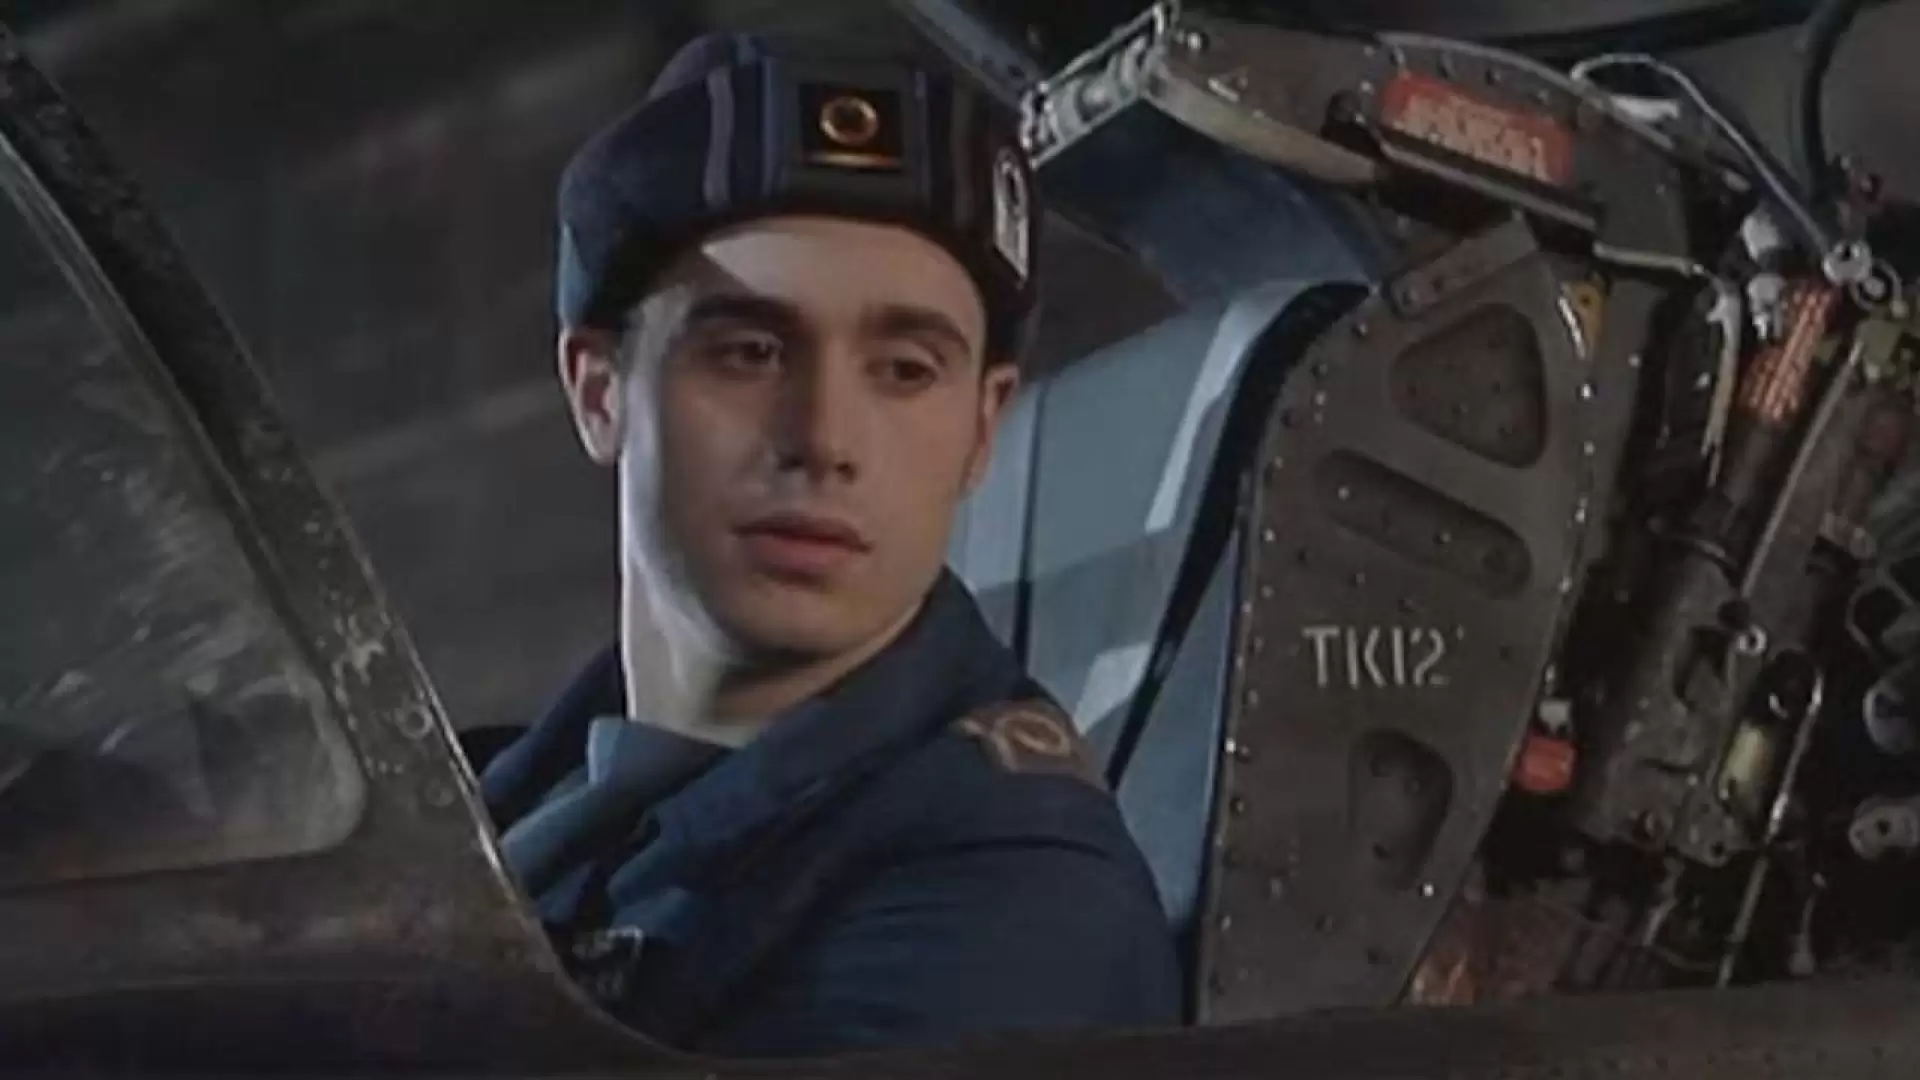 دانلود فیلم Wing Commander 1999